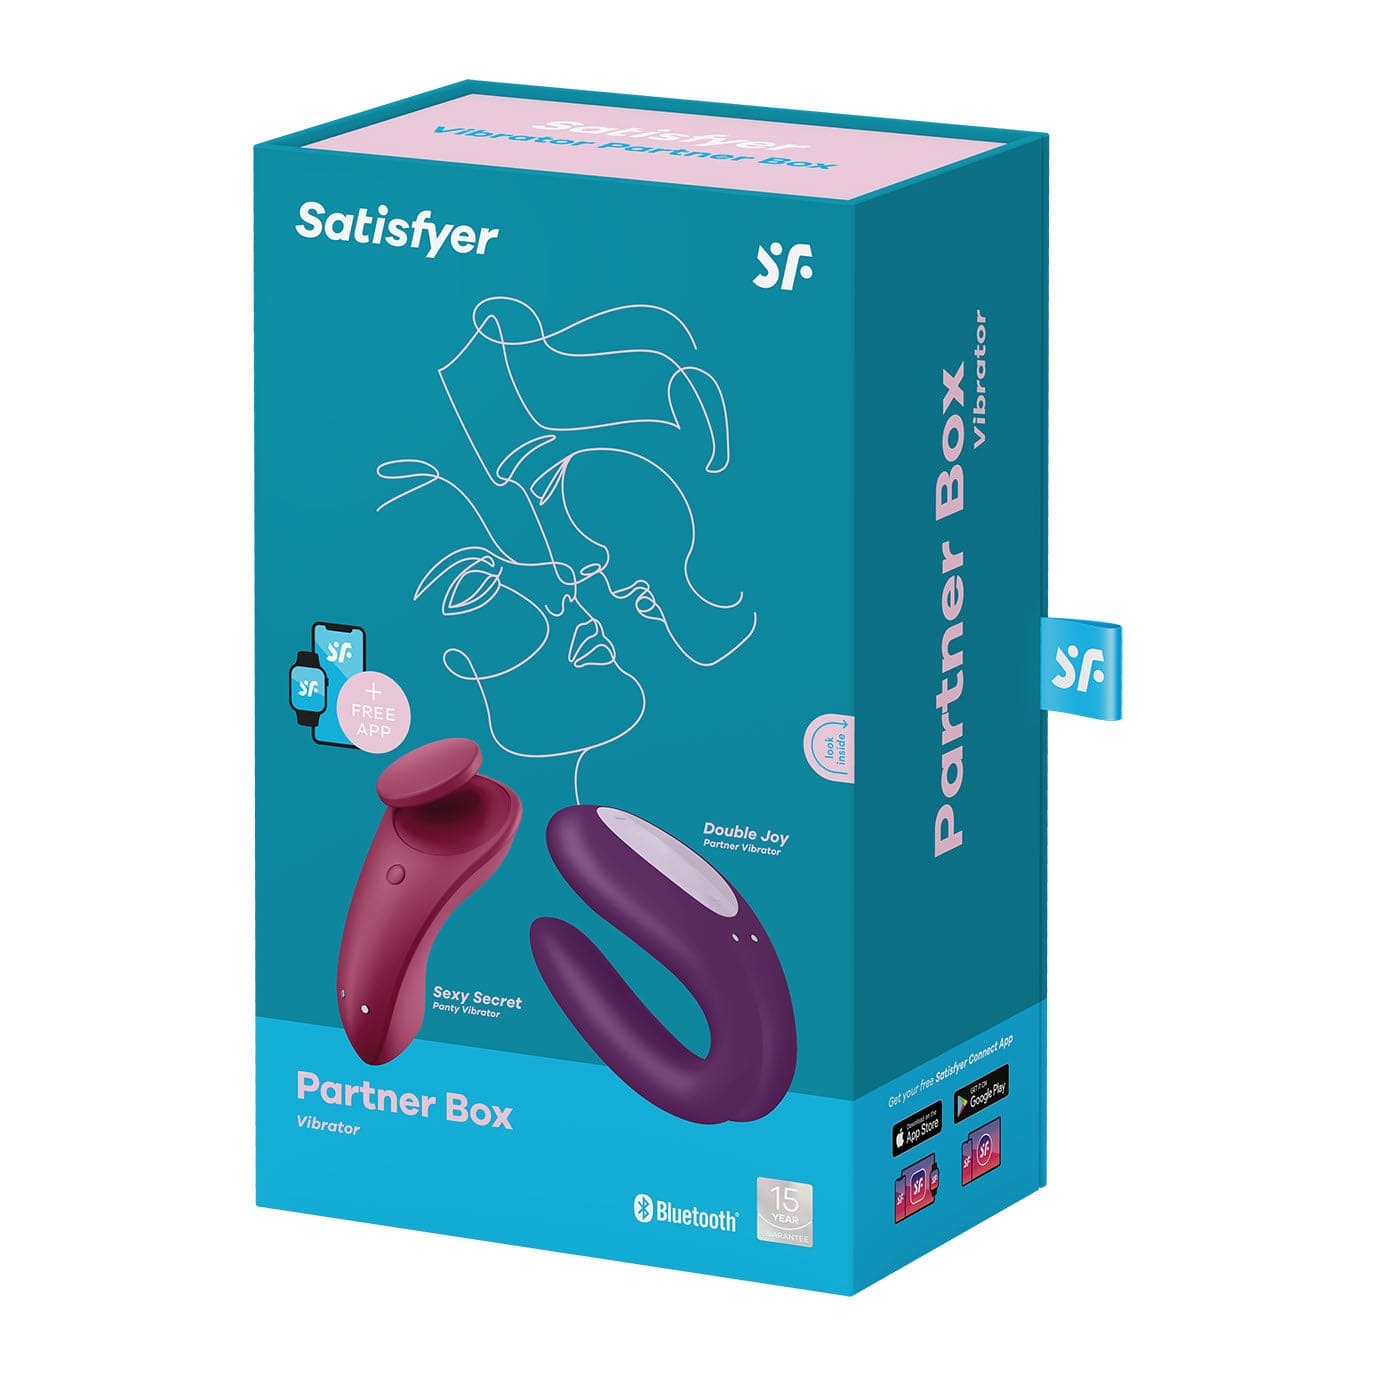 Satisfyer - Partner Box 1 App-Controlled Sexy Secret and Double Joy Couple Set (Multi Colour) -  Couple's Massager (Vibration) Rechargeable  Durio.sg